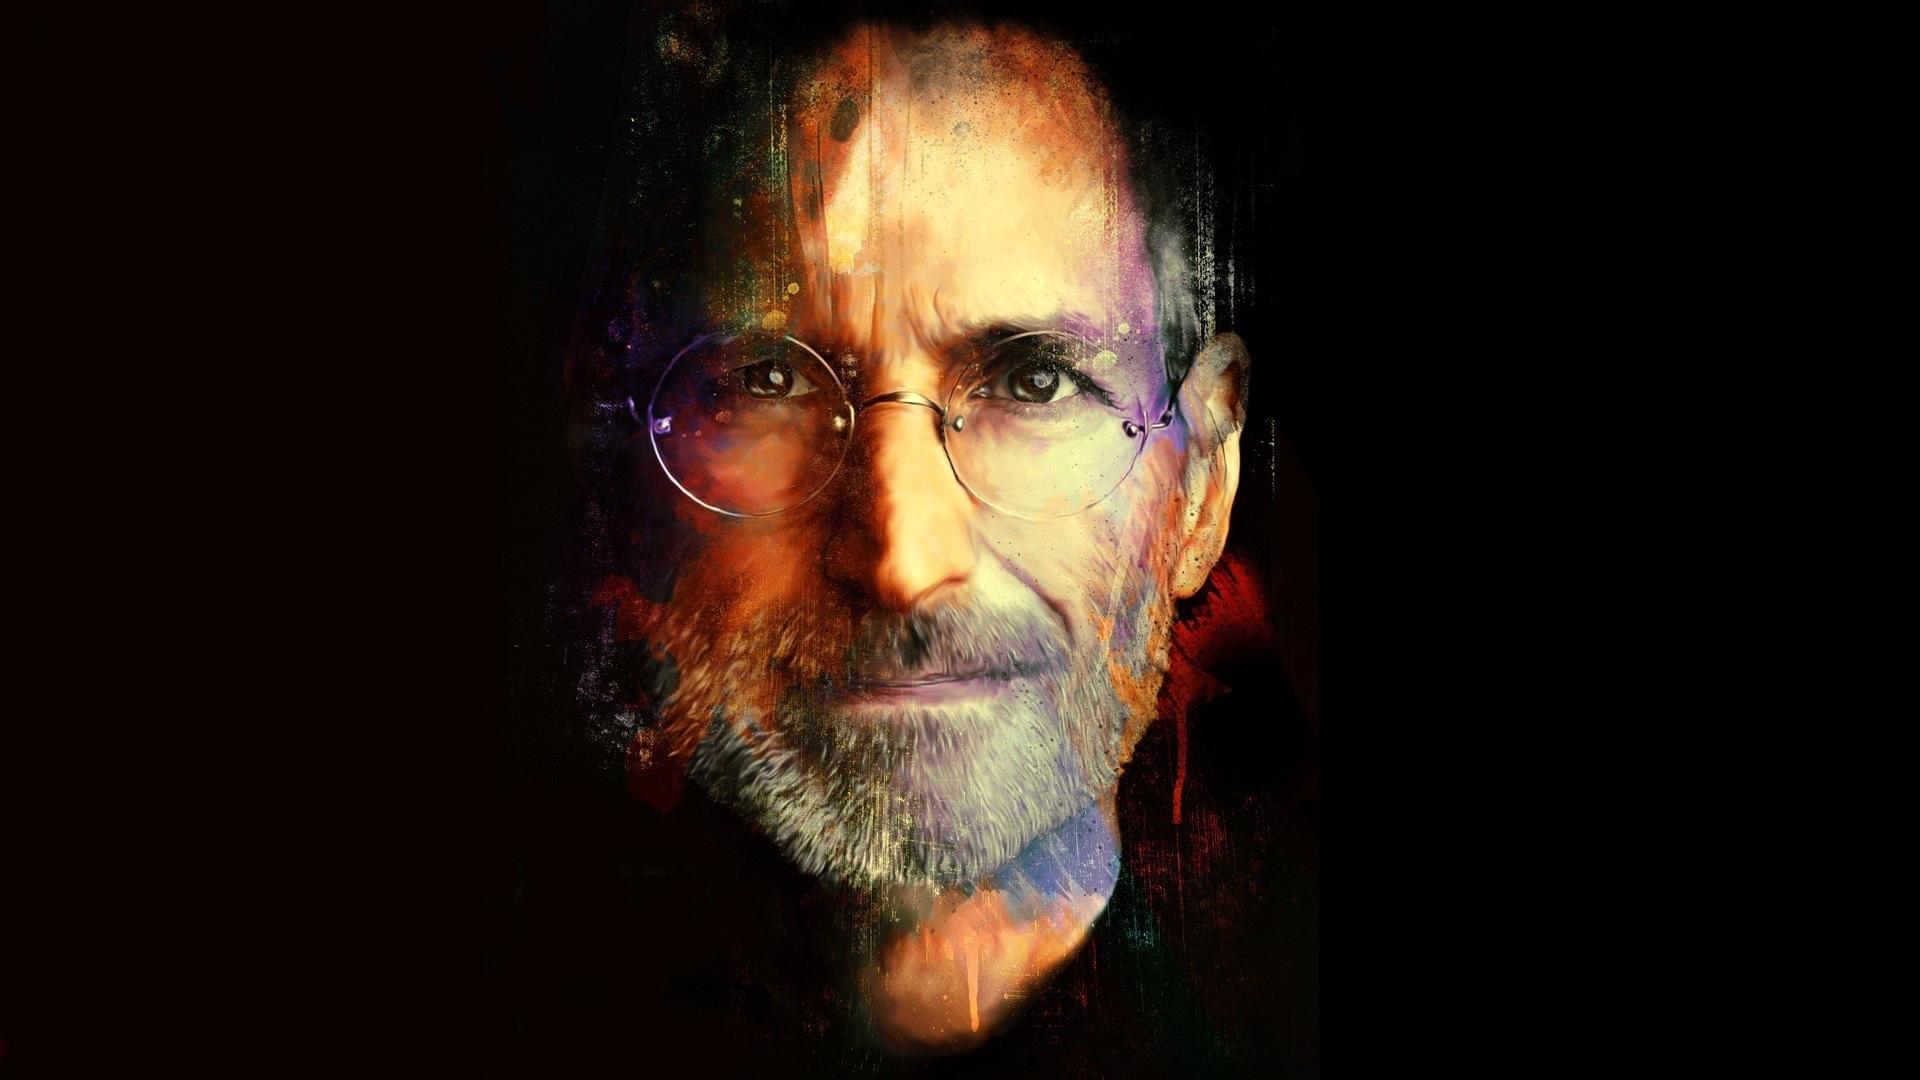 Steve Jobs Wallpaper. Steve Jobs Background